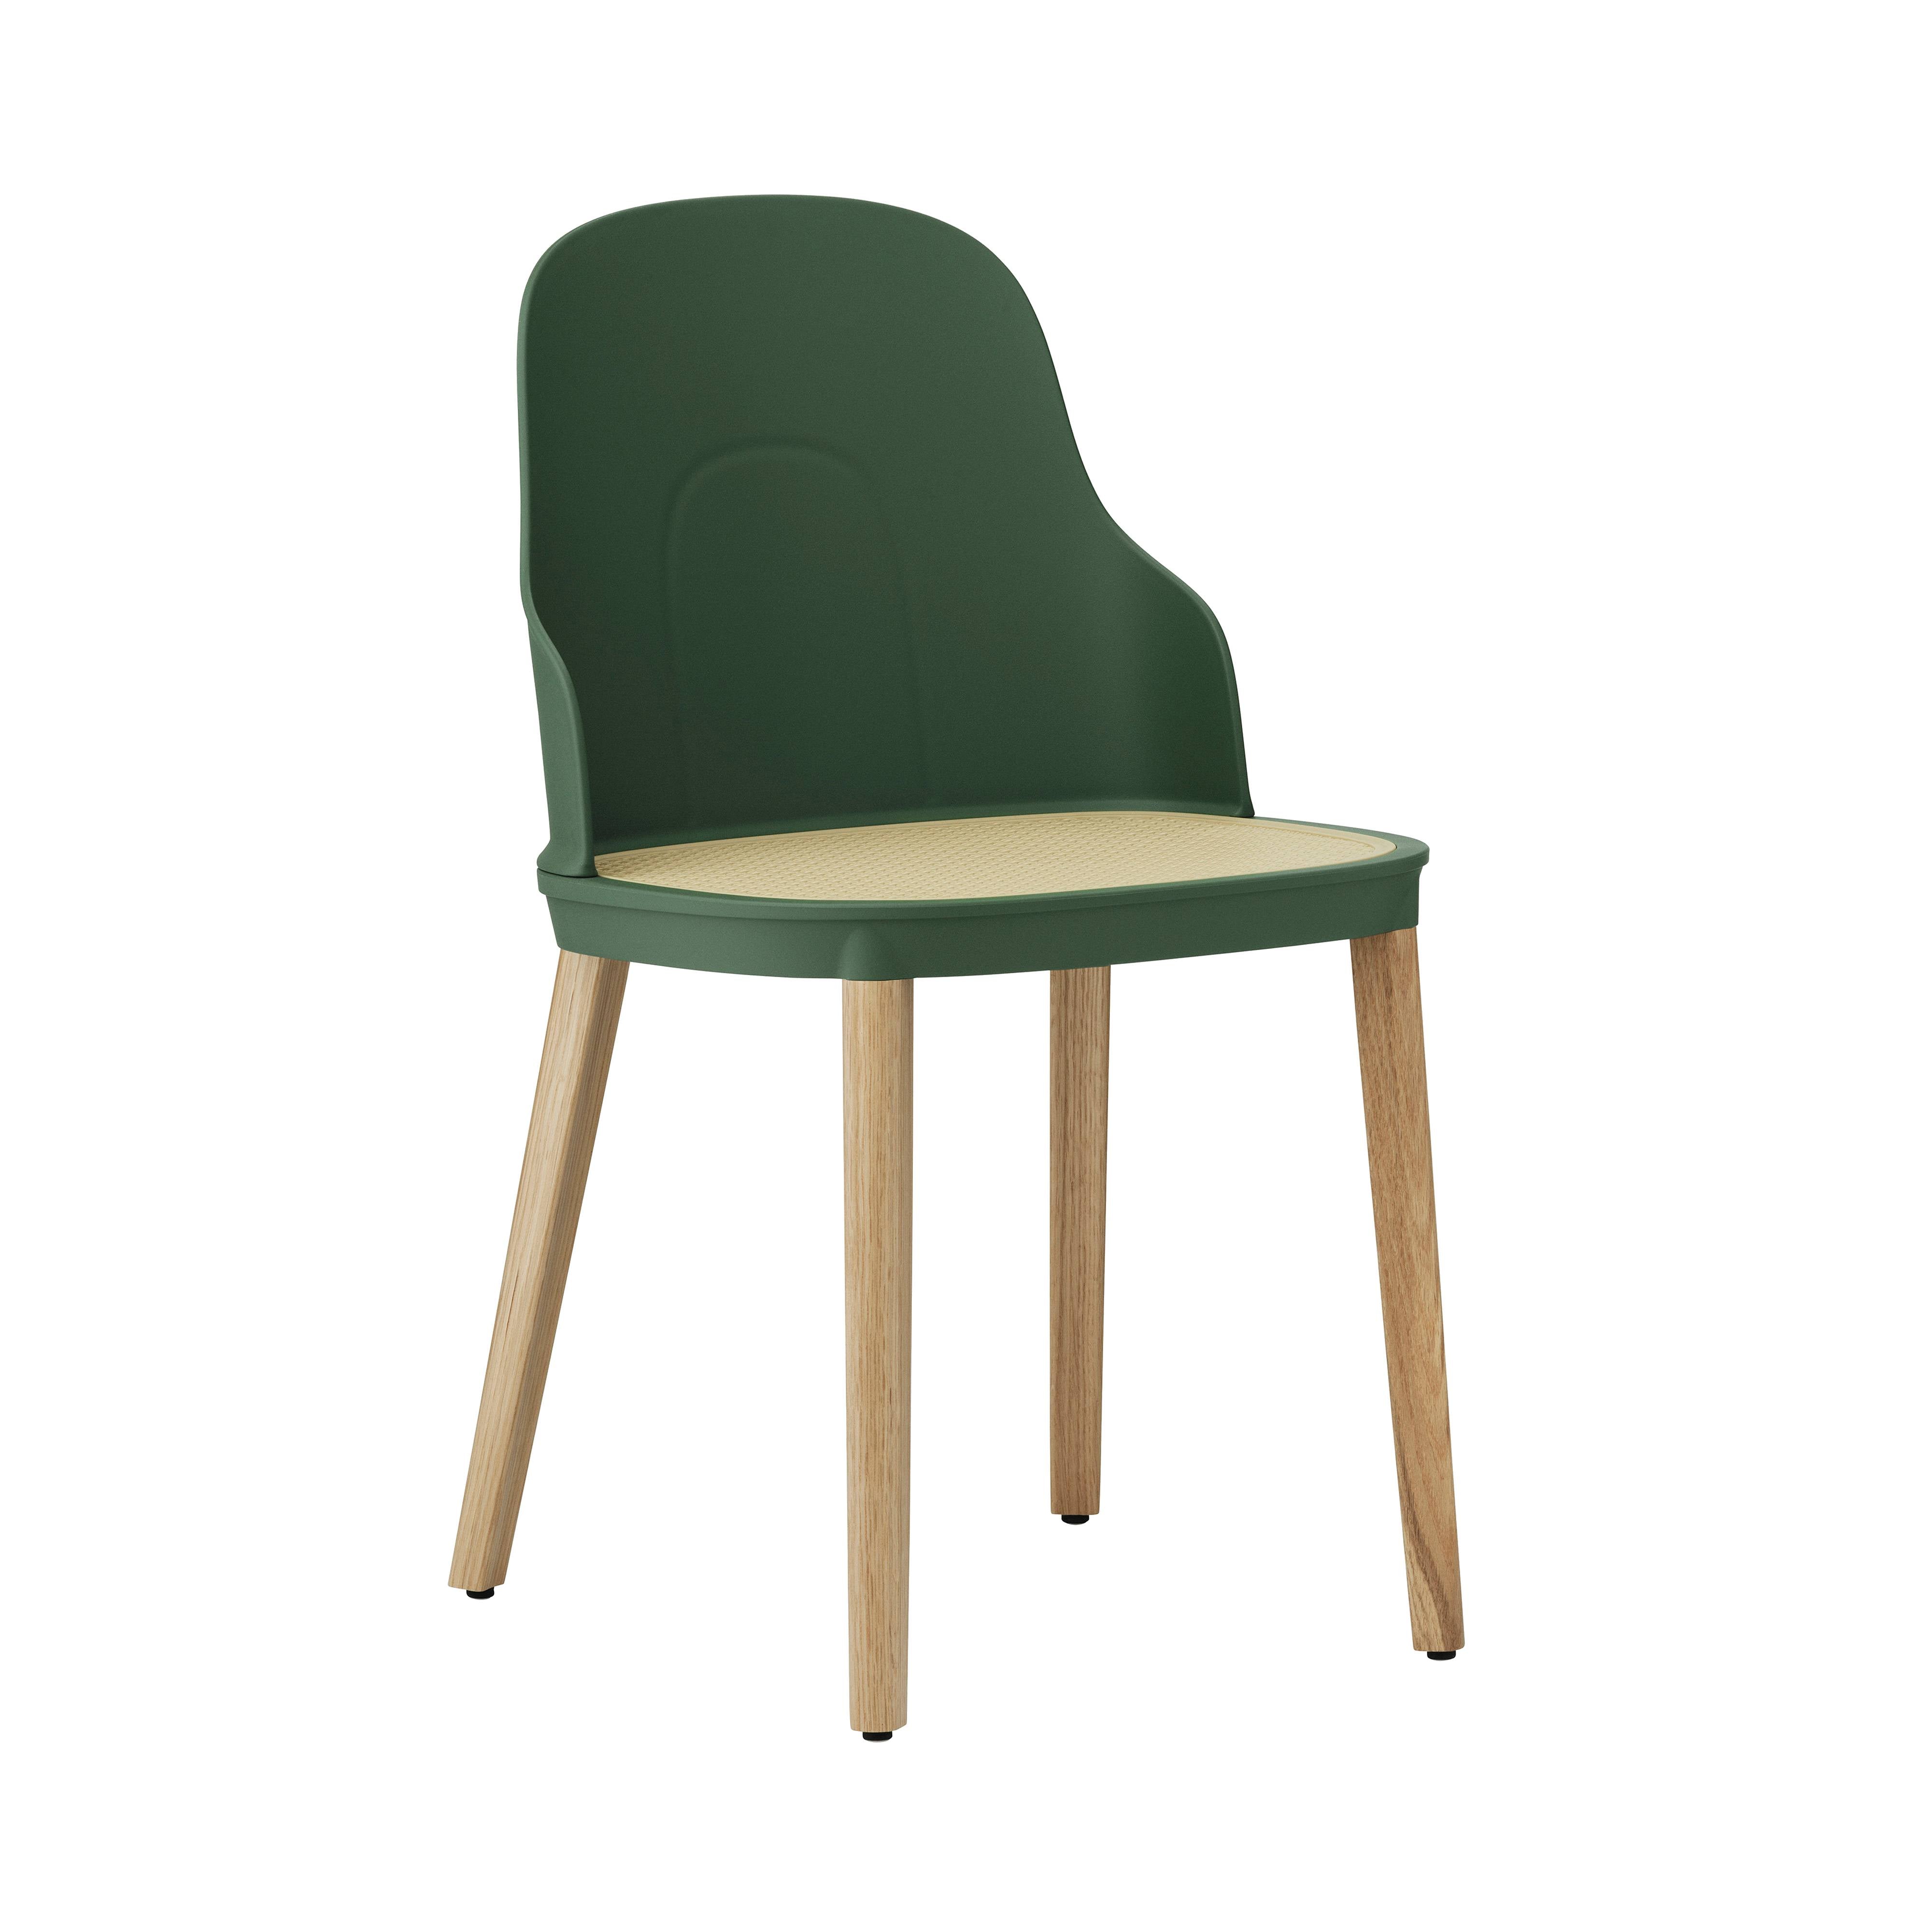 Allez Chair: Molded Wicker + Park Green + Oak